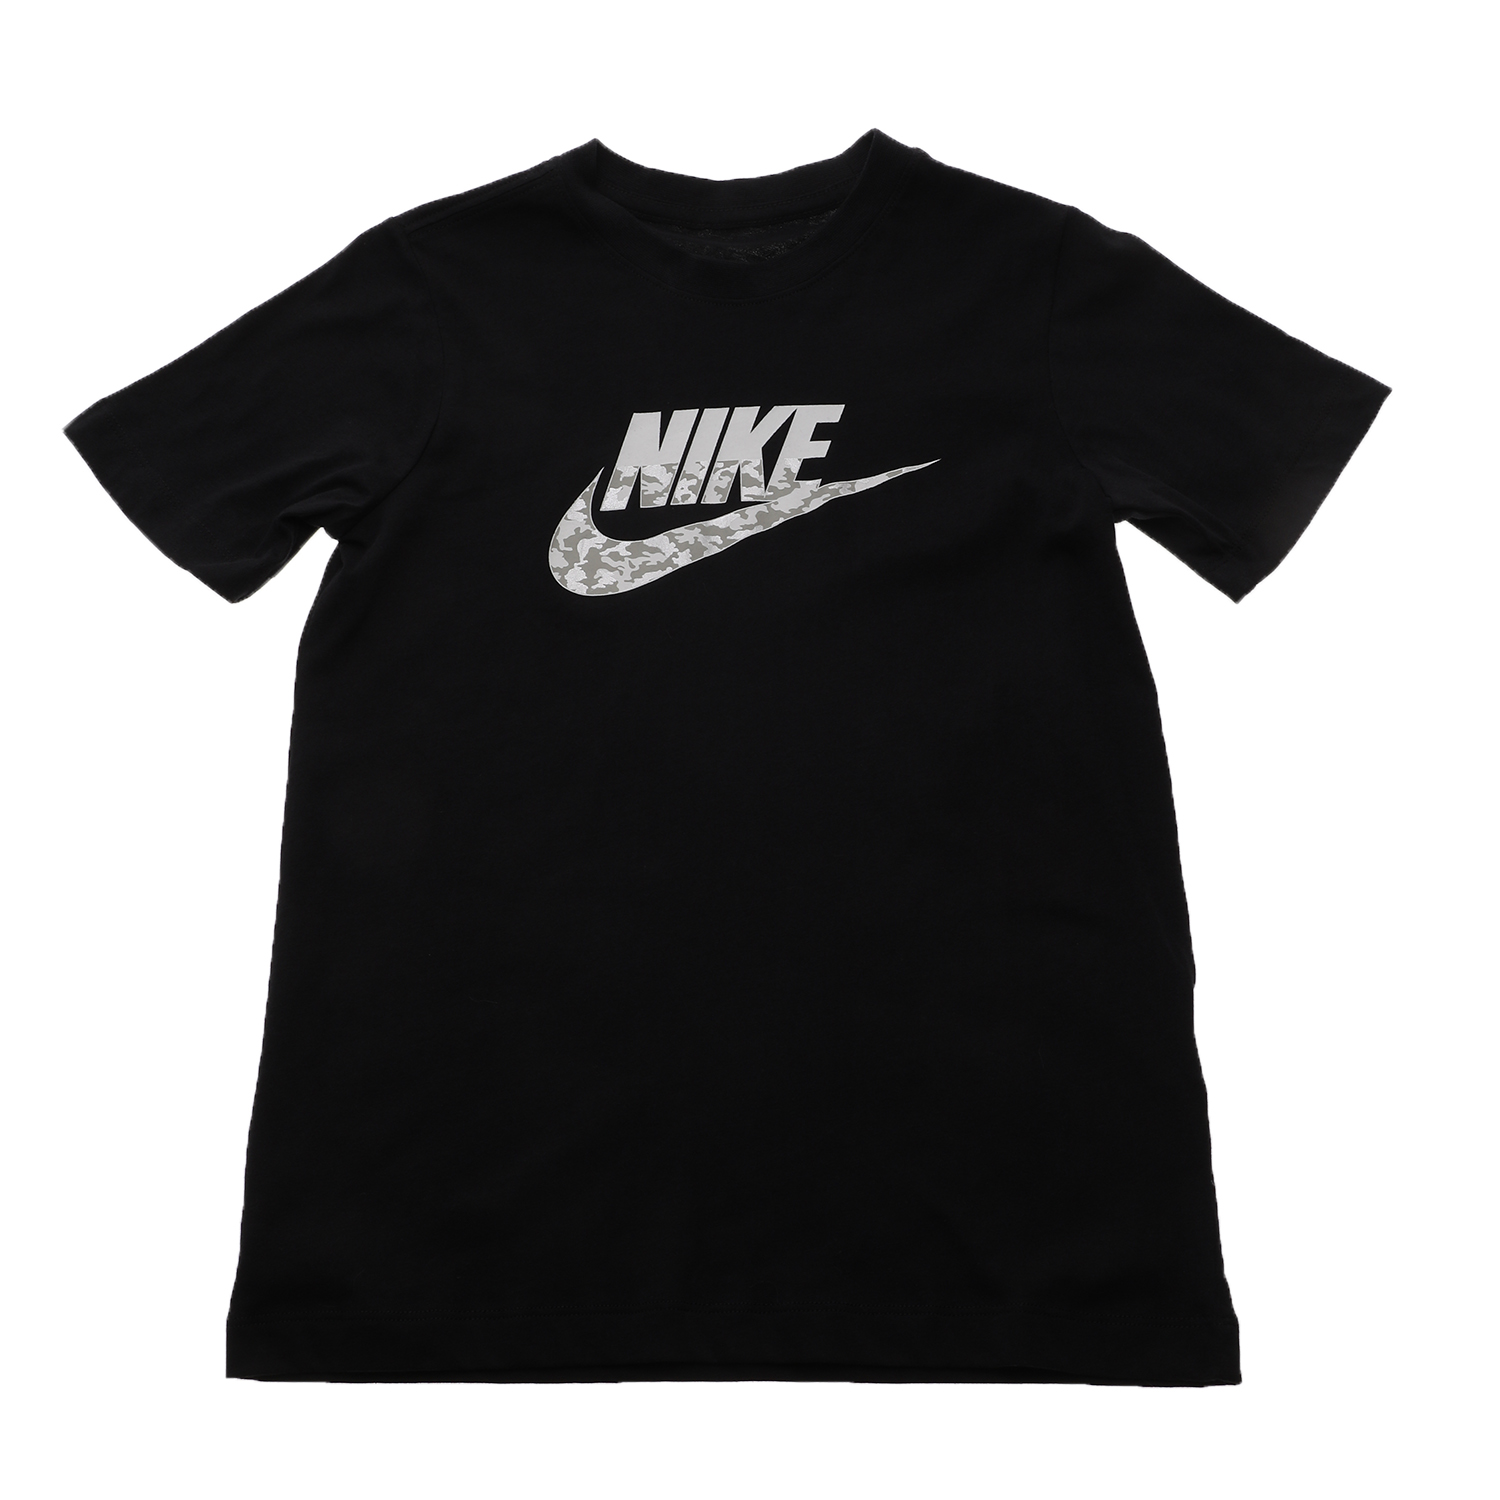 Παιδικά/Boys/Ρούχα/Αθλητικά NIKE - Παιδική κοντομάνικη μπλούζα NIKE SW TEE FUTURA CAMO μαύρη